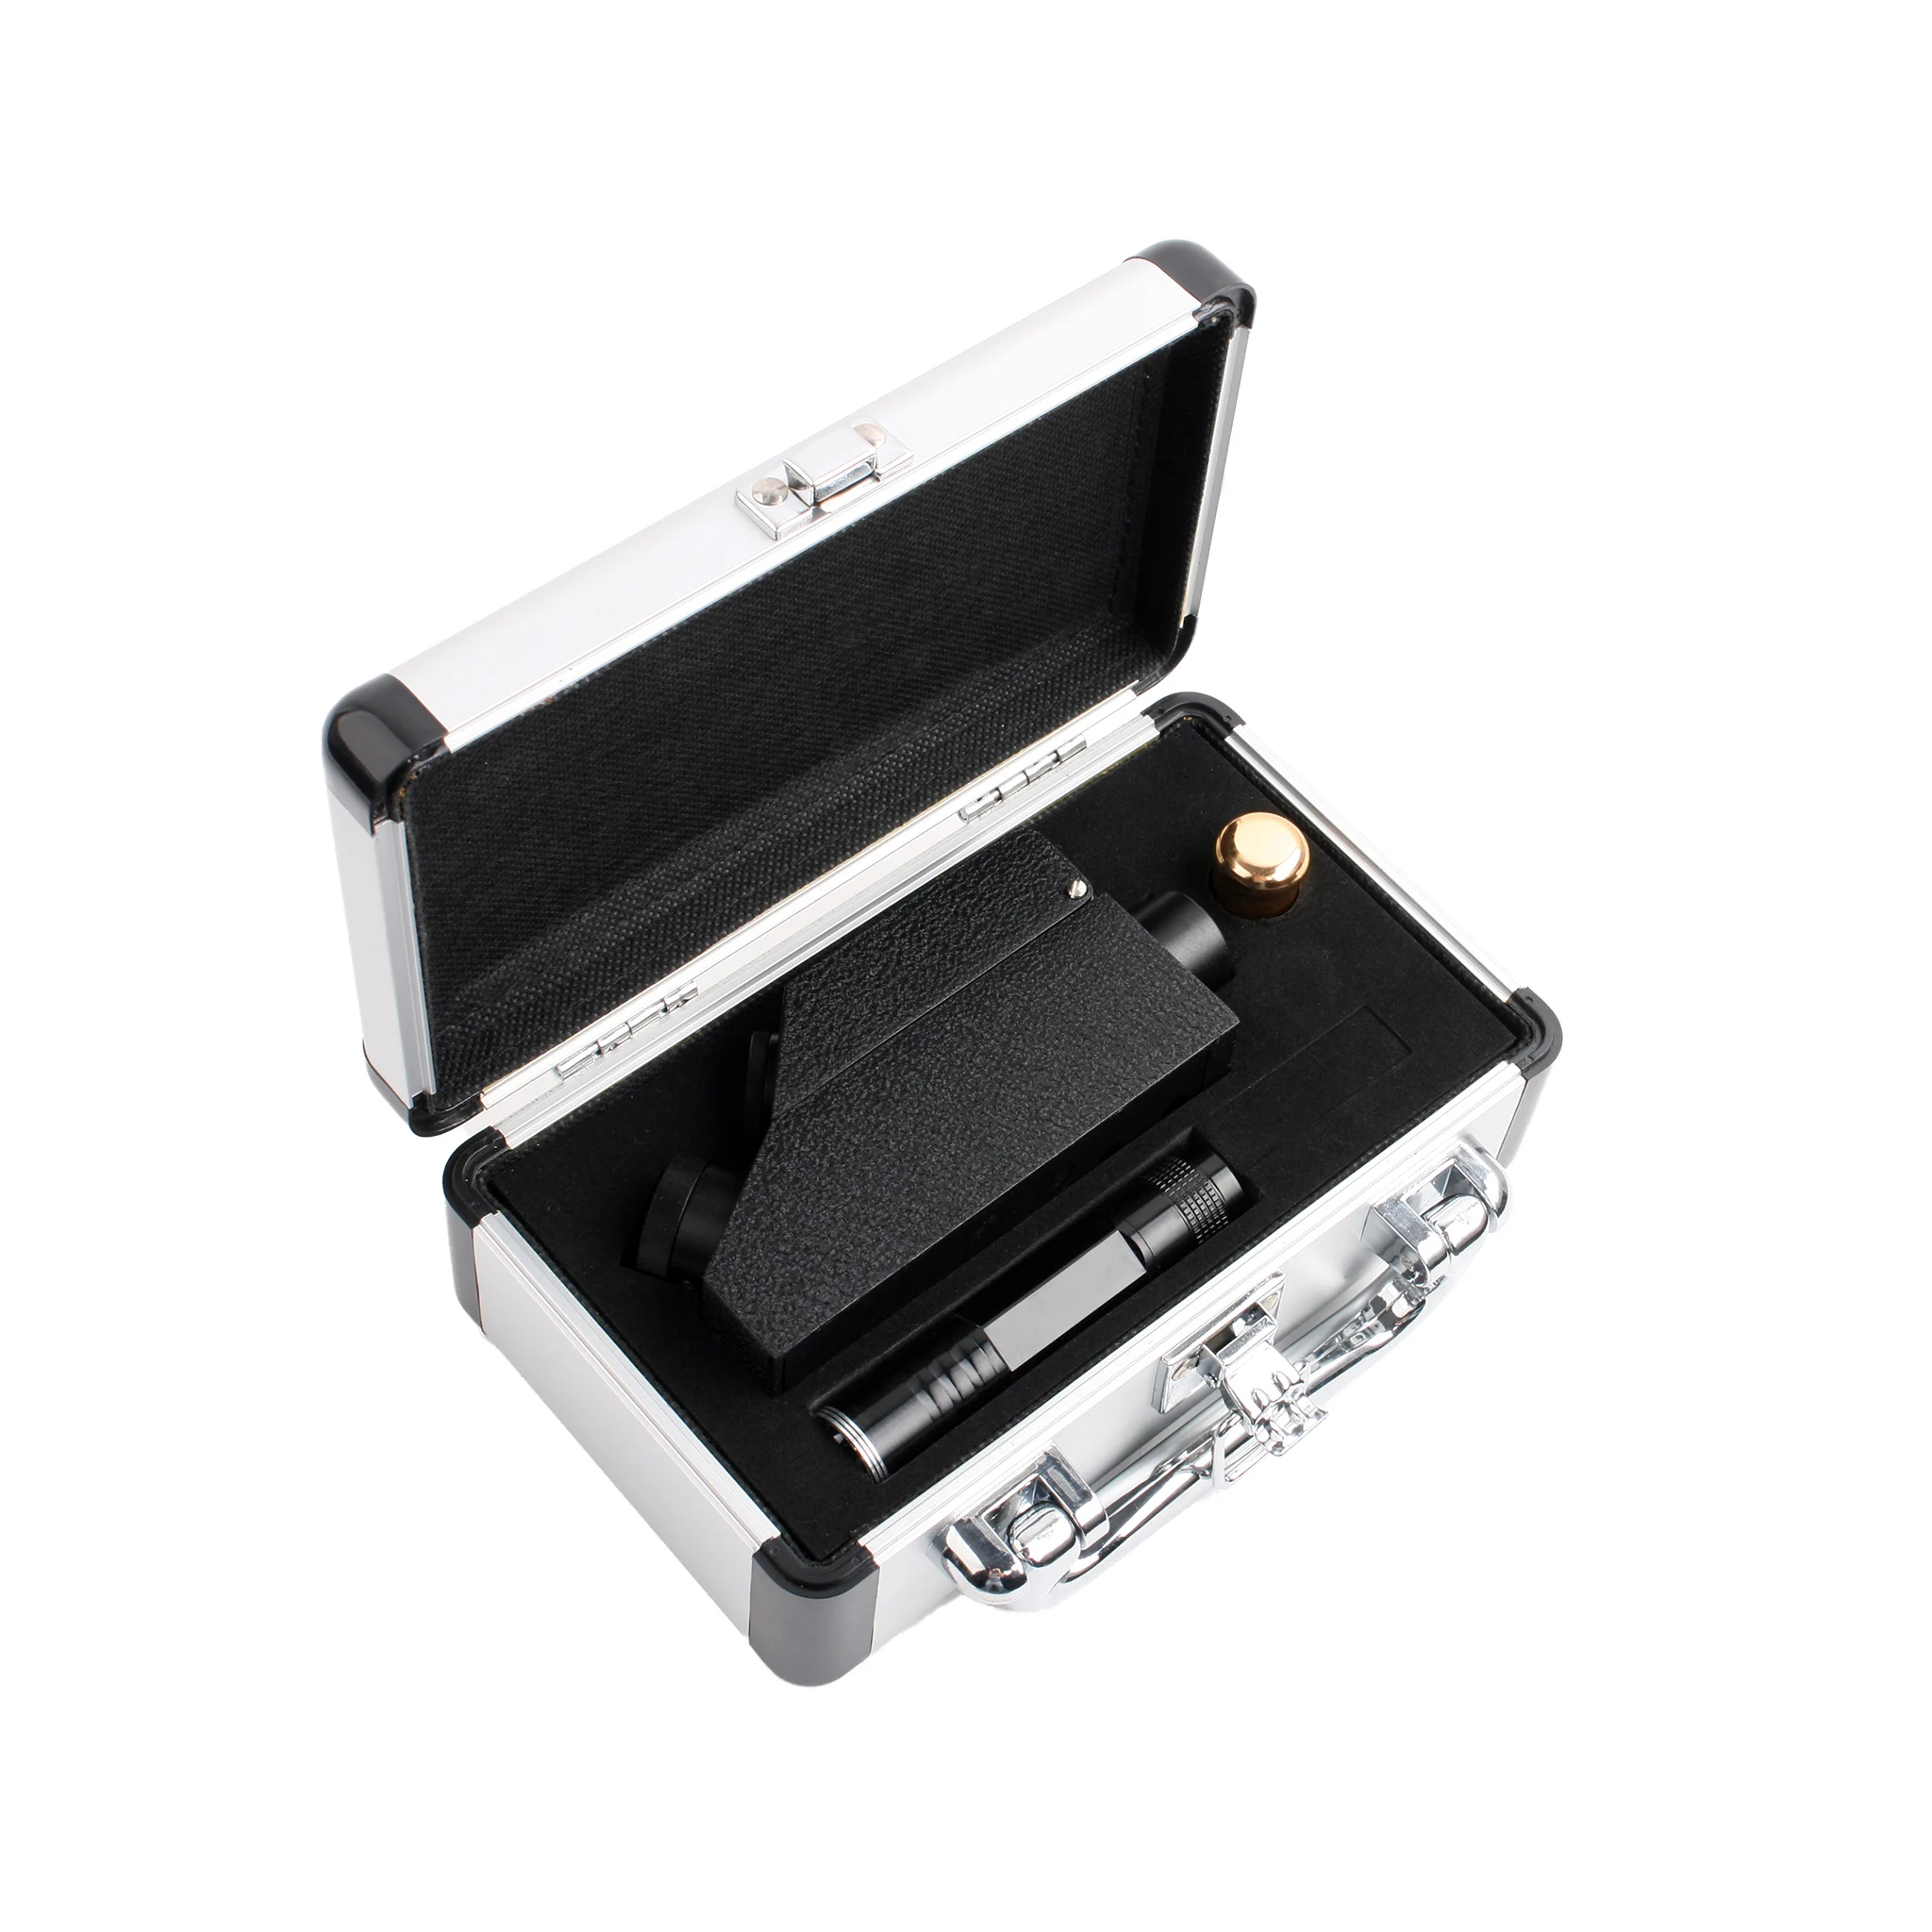 Indice di pietre preziose rifrattometro gemmologico digitale portatile di alta qualità 1.30 a 1.81 RI con custodia Deluxe